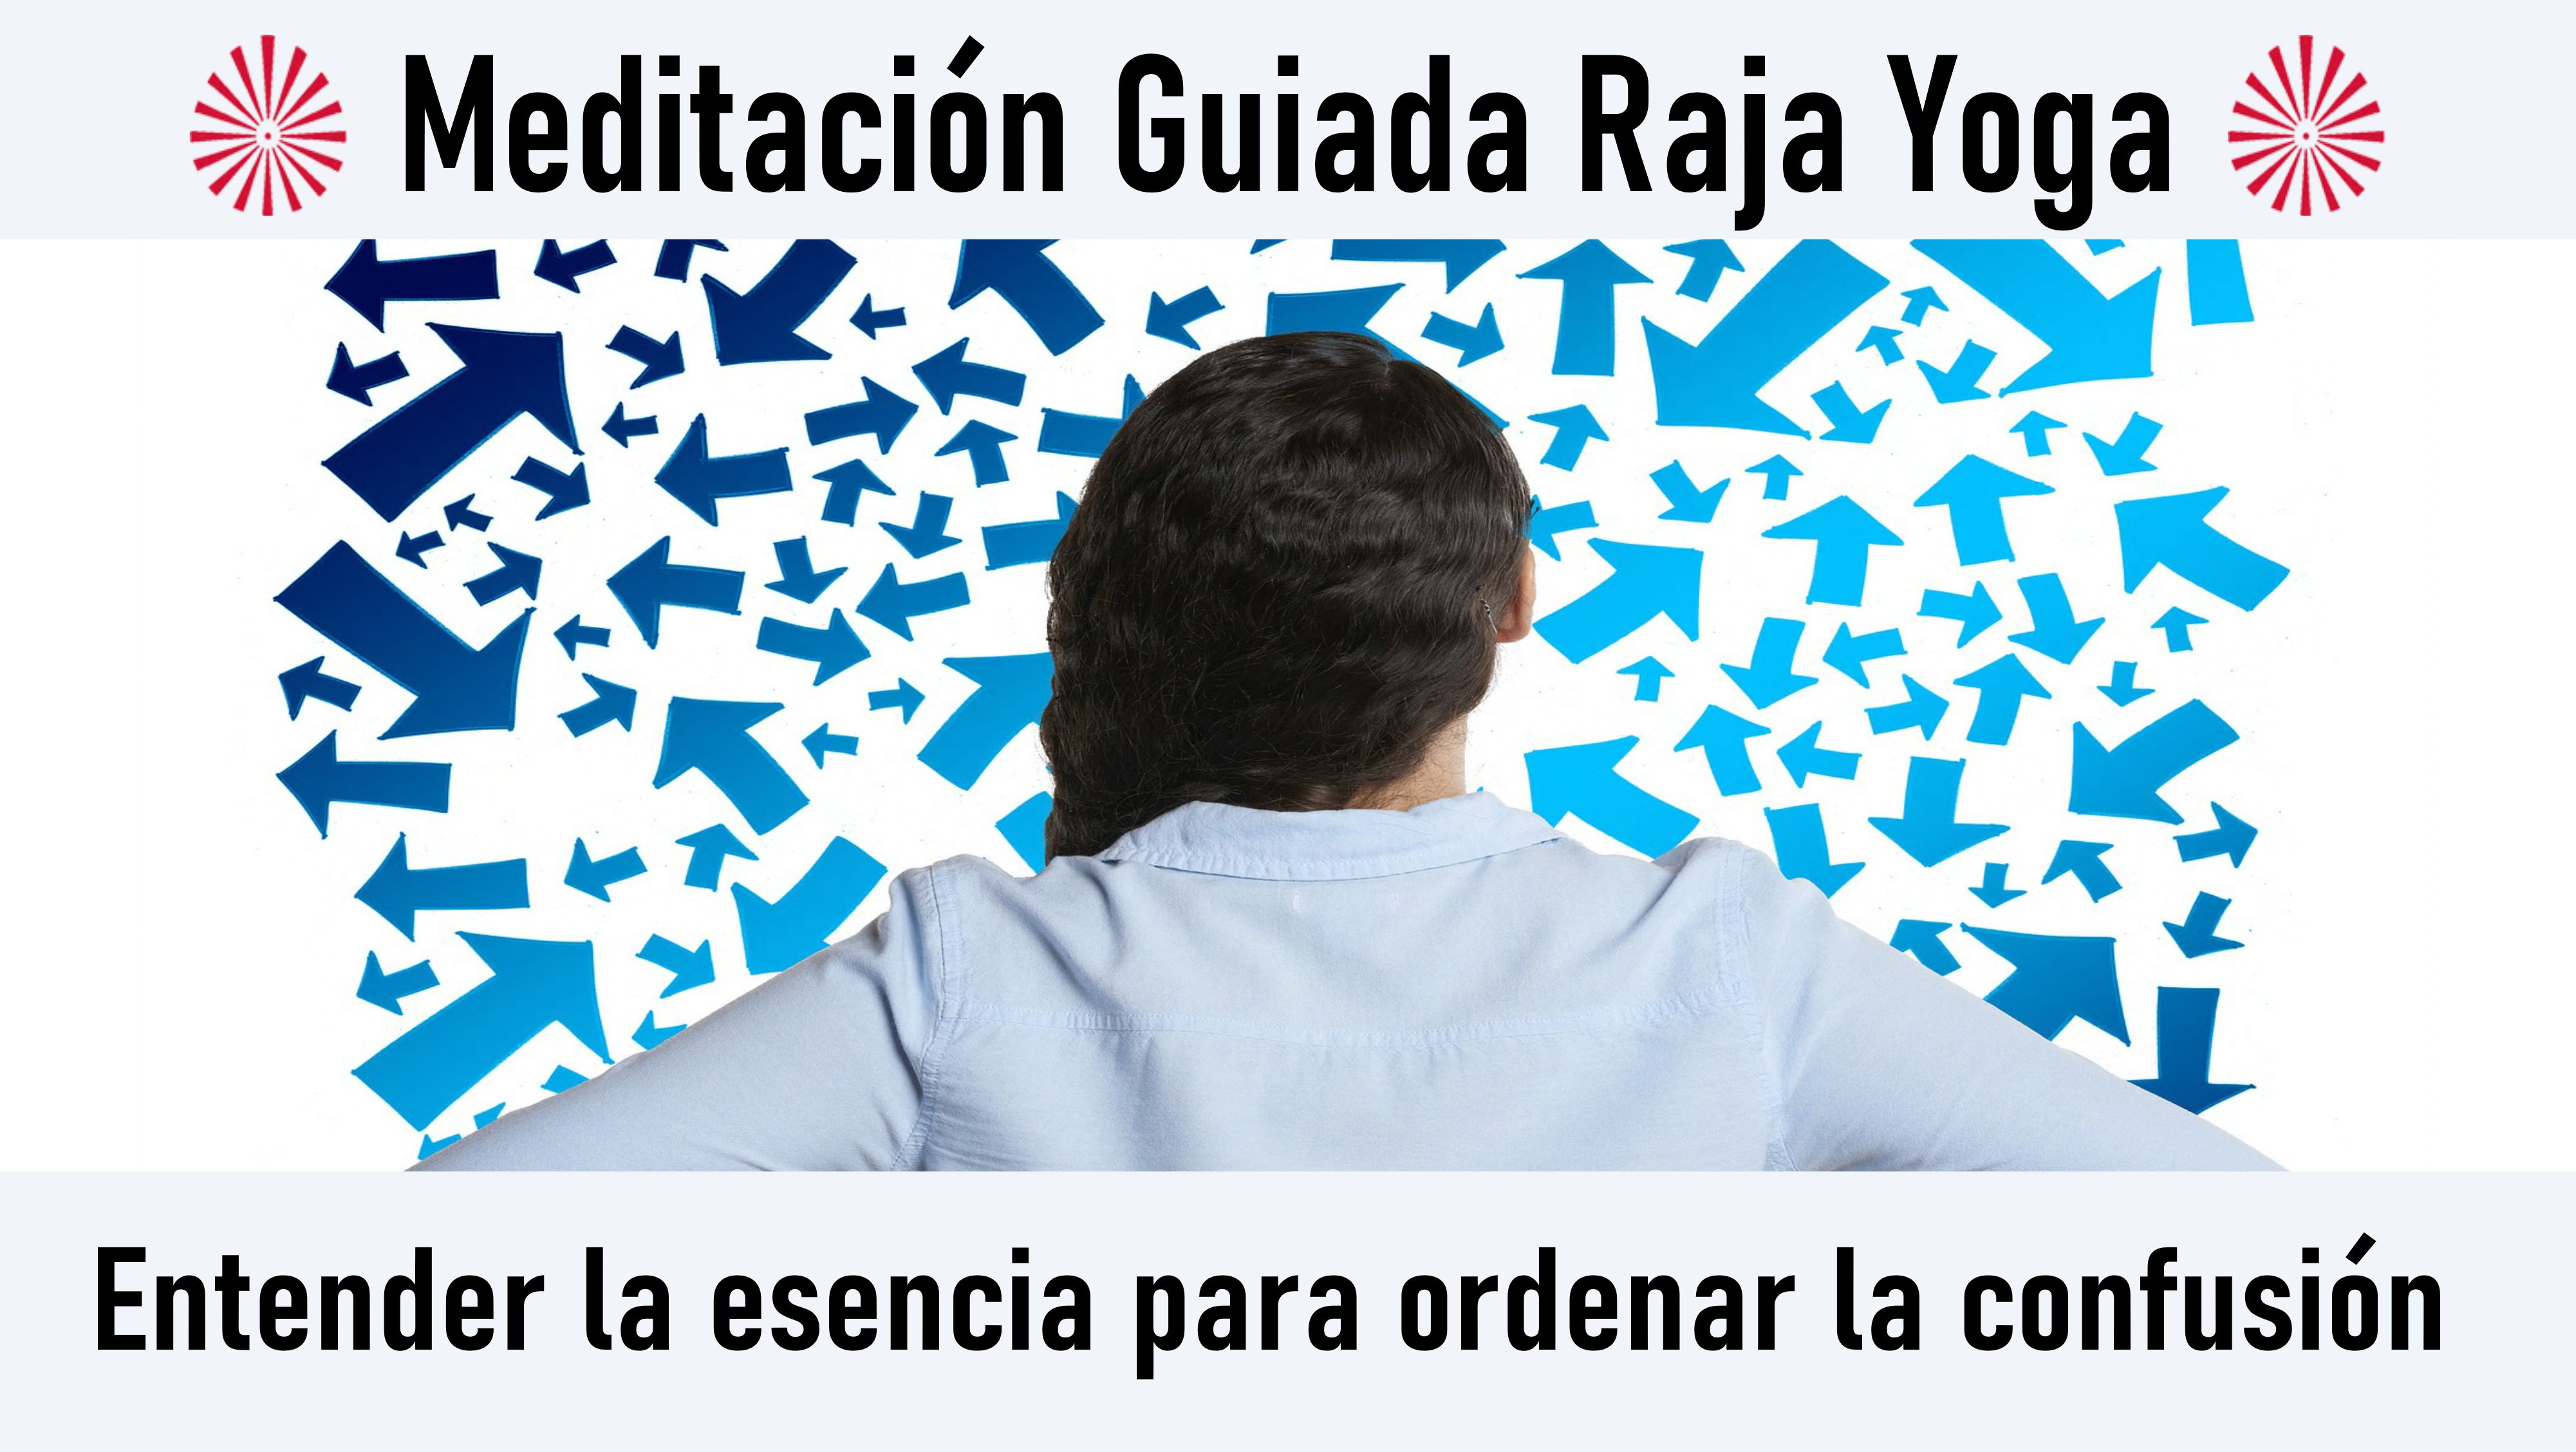 Meditación Raja Yoga: Entender la esencia para ordenar la confusión (2 Octubre 2020) On-line desde Barcelona